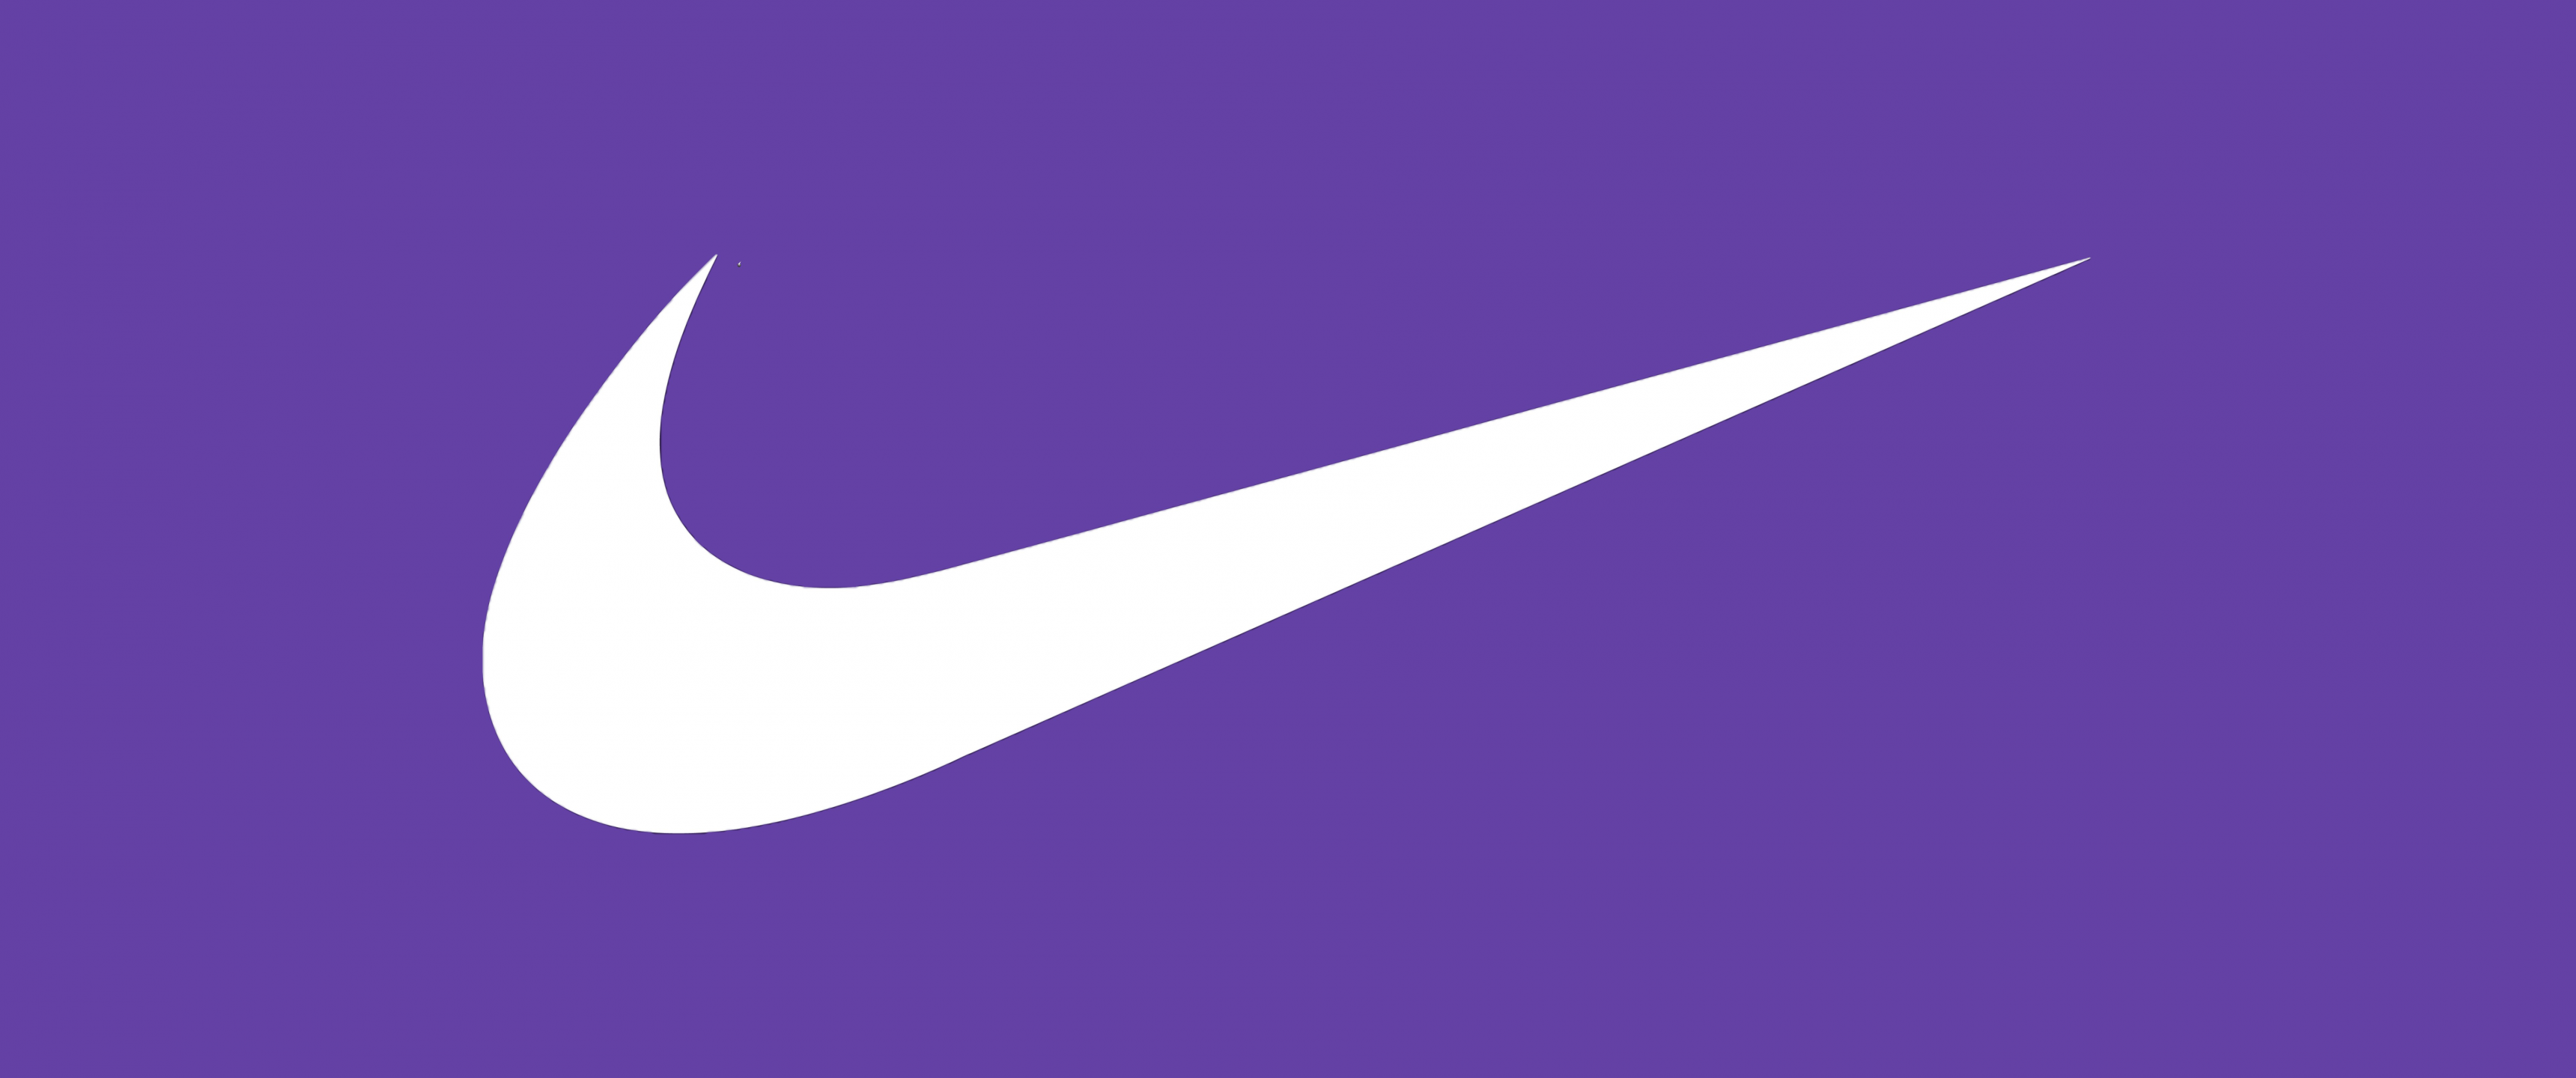 Nike Wallpaper 4K, Purple background, 5K, 8K